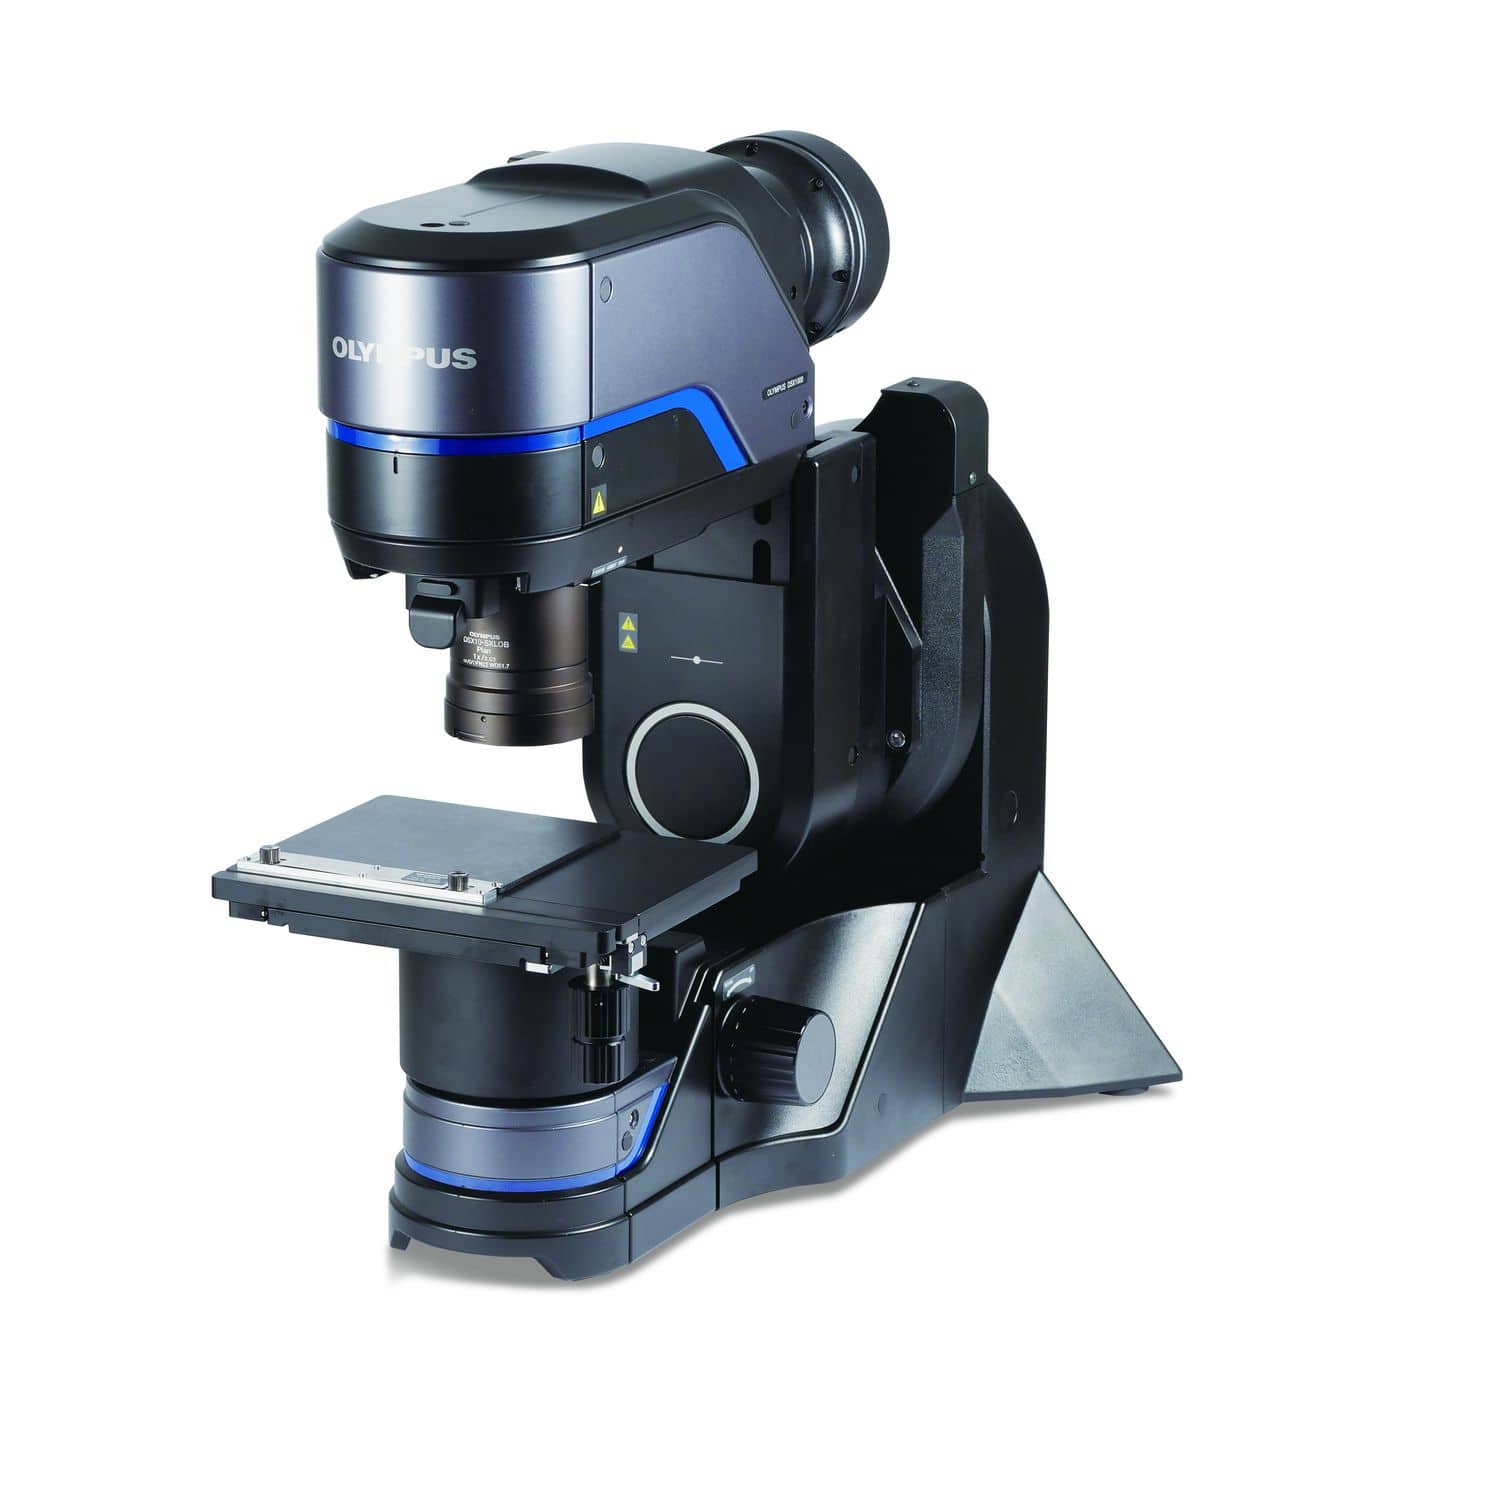 Microscopía de alta resolución